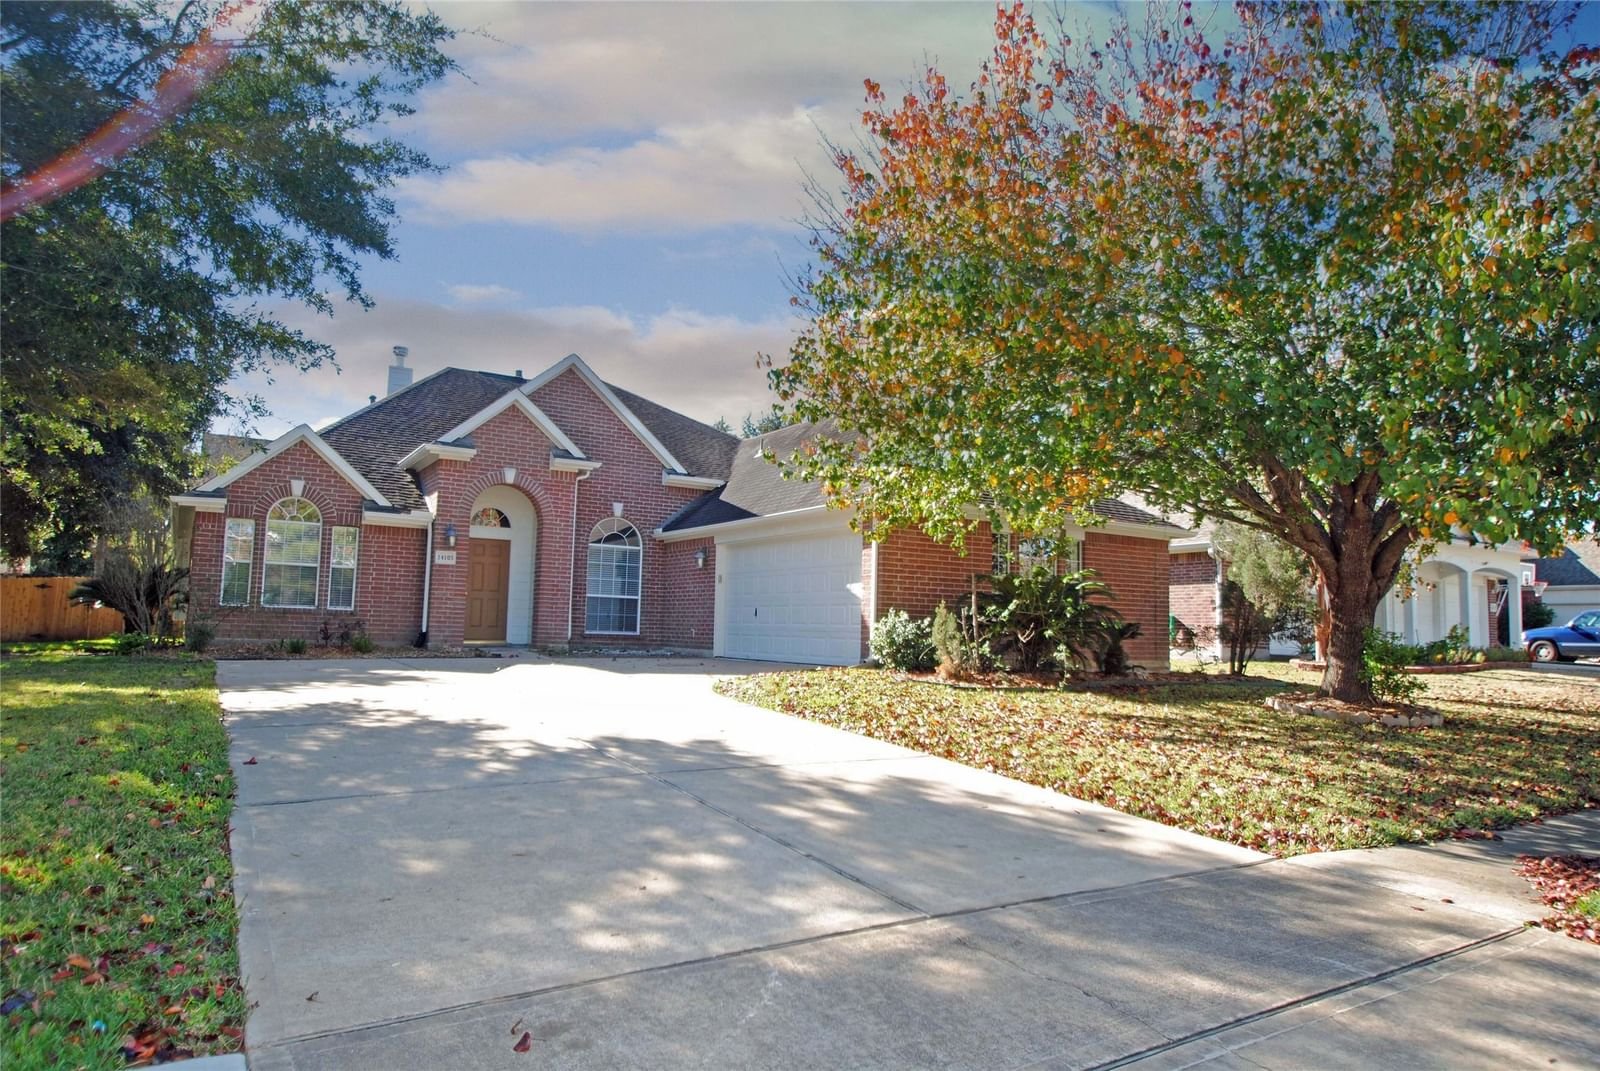 Real estate property located at 14103 Becket Woods, Fort Bend, Glen Laurel Sec 5, Sugar Land, TX, US